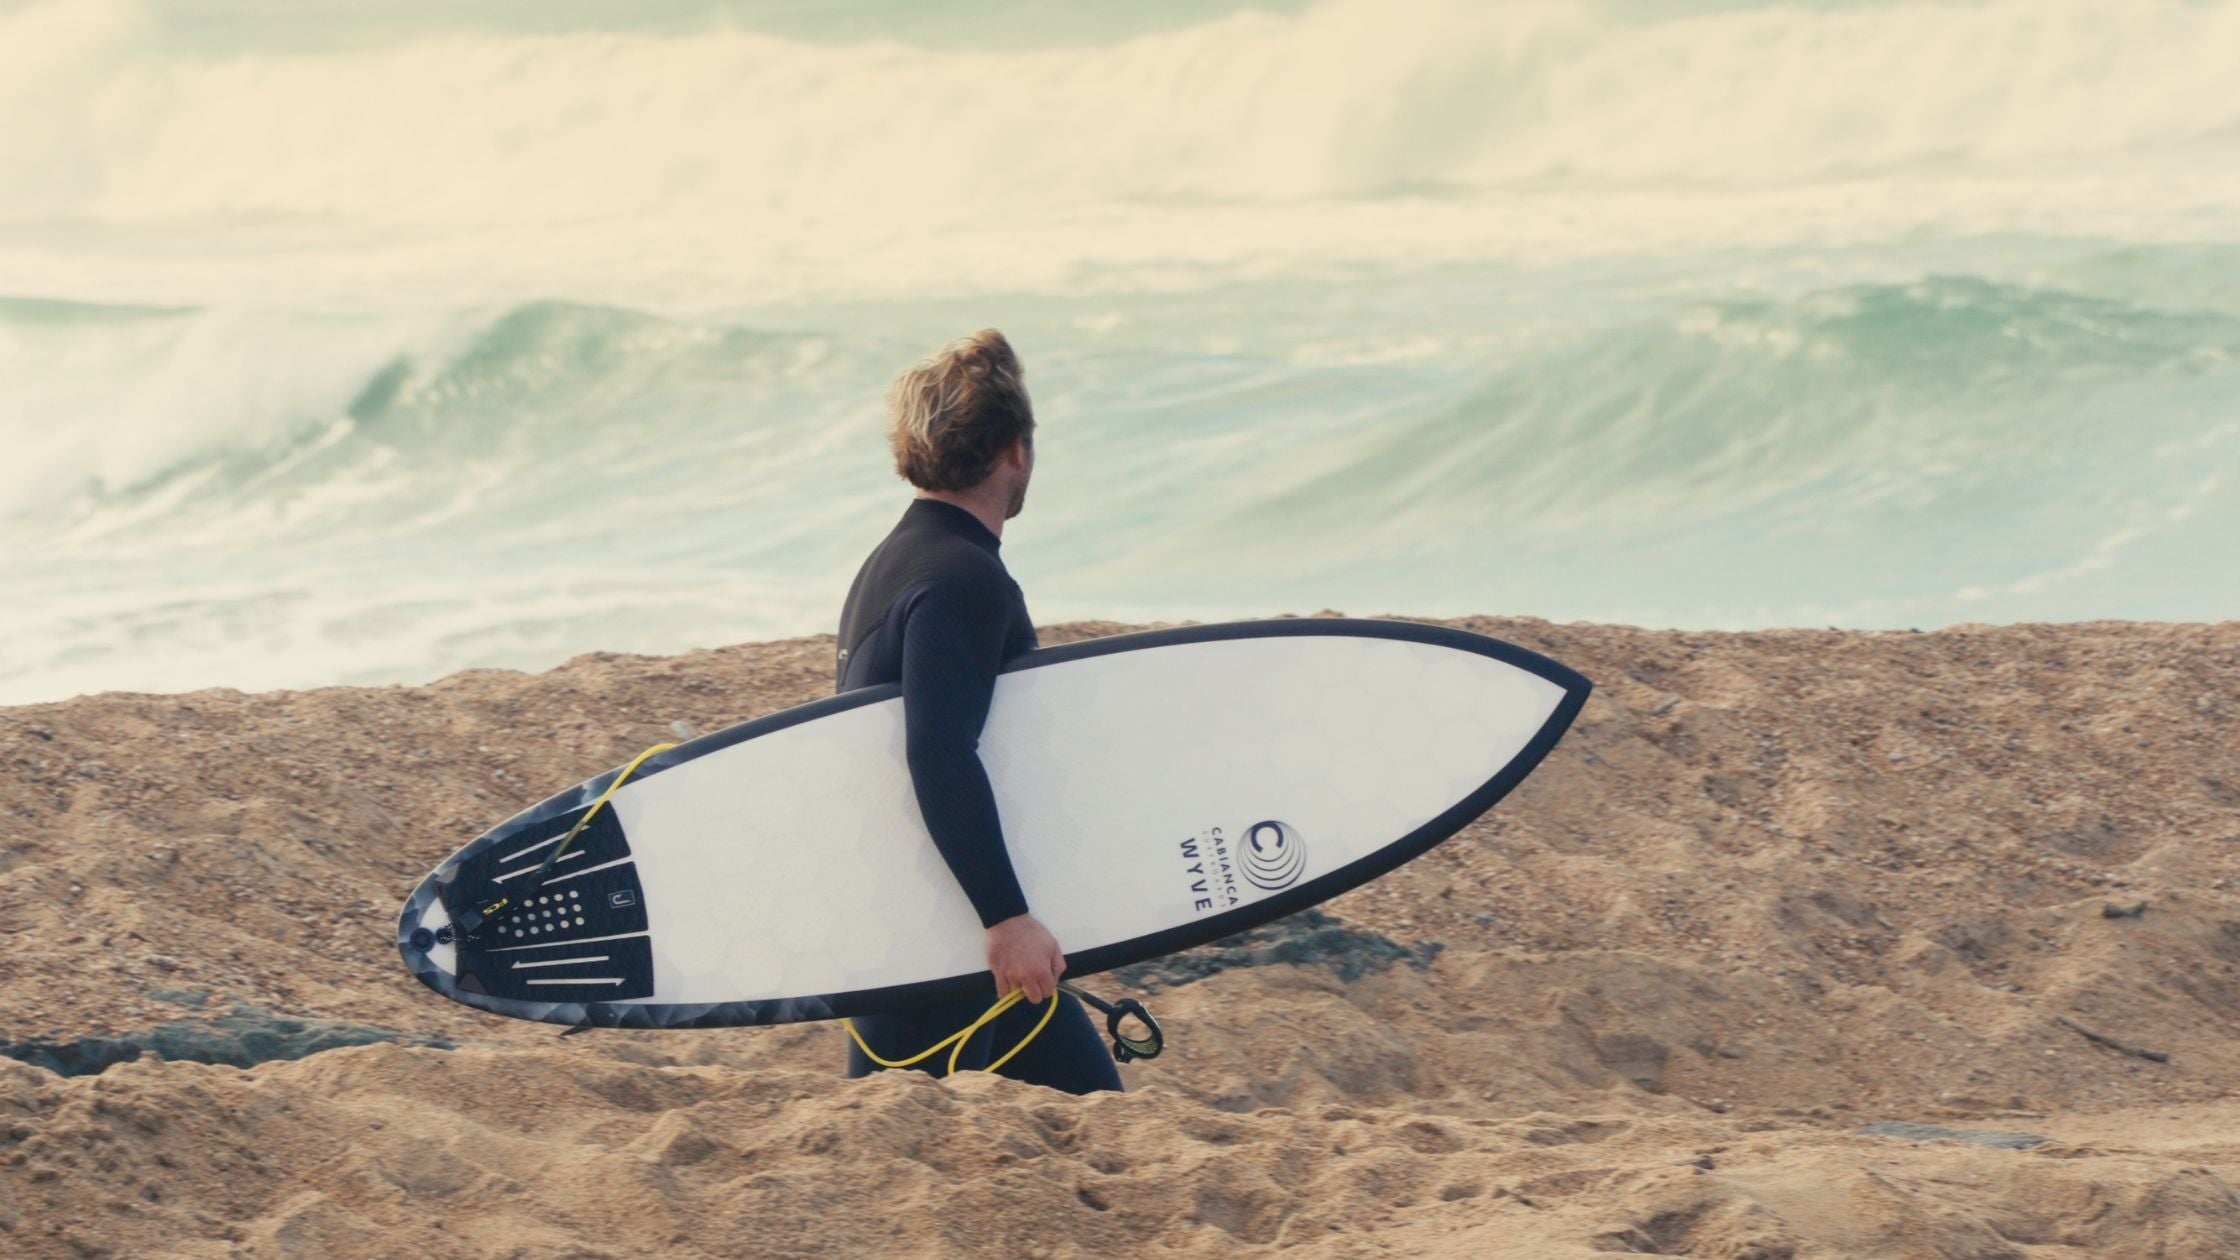 un surfeur avec une planche de surf wyve sous le bras